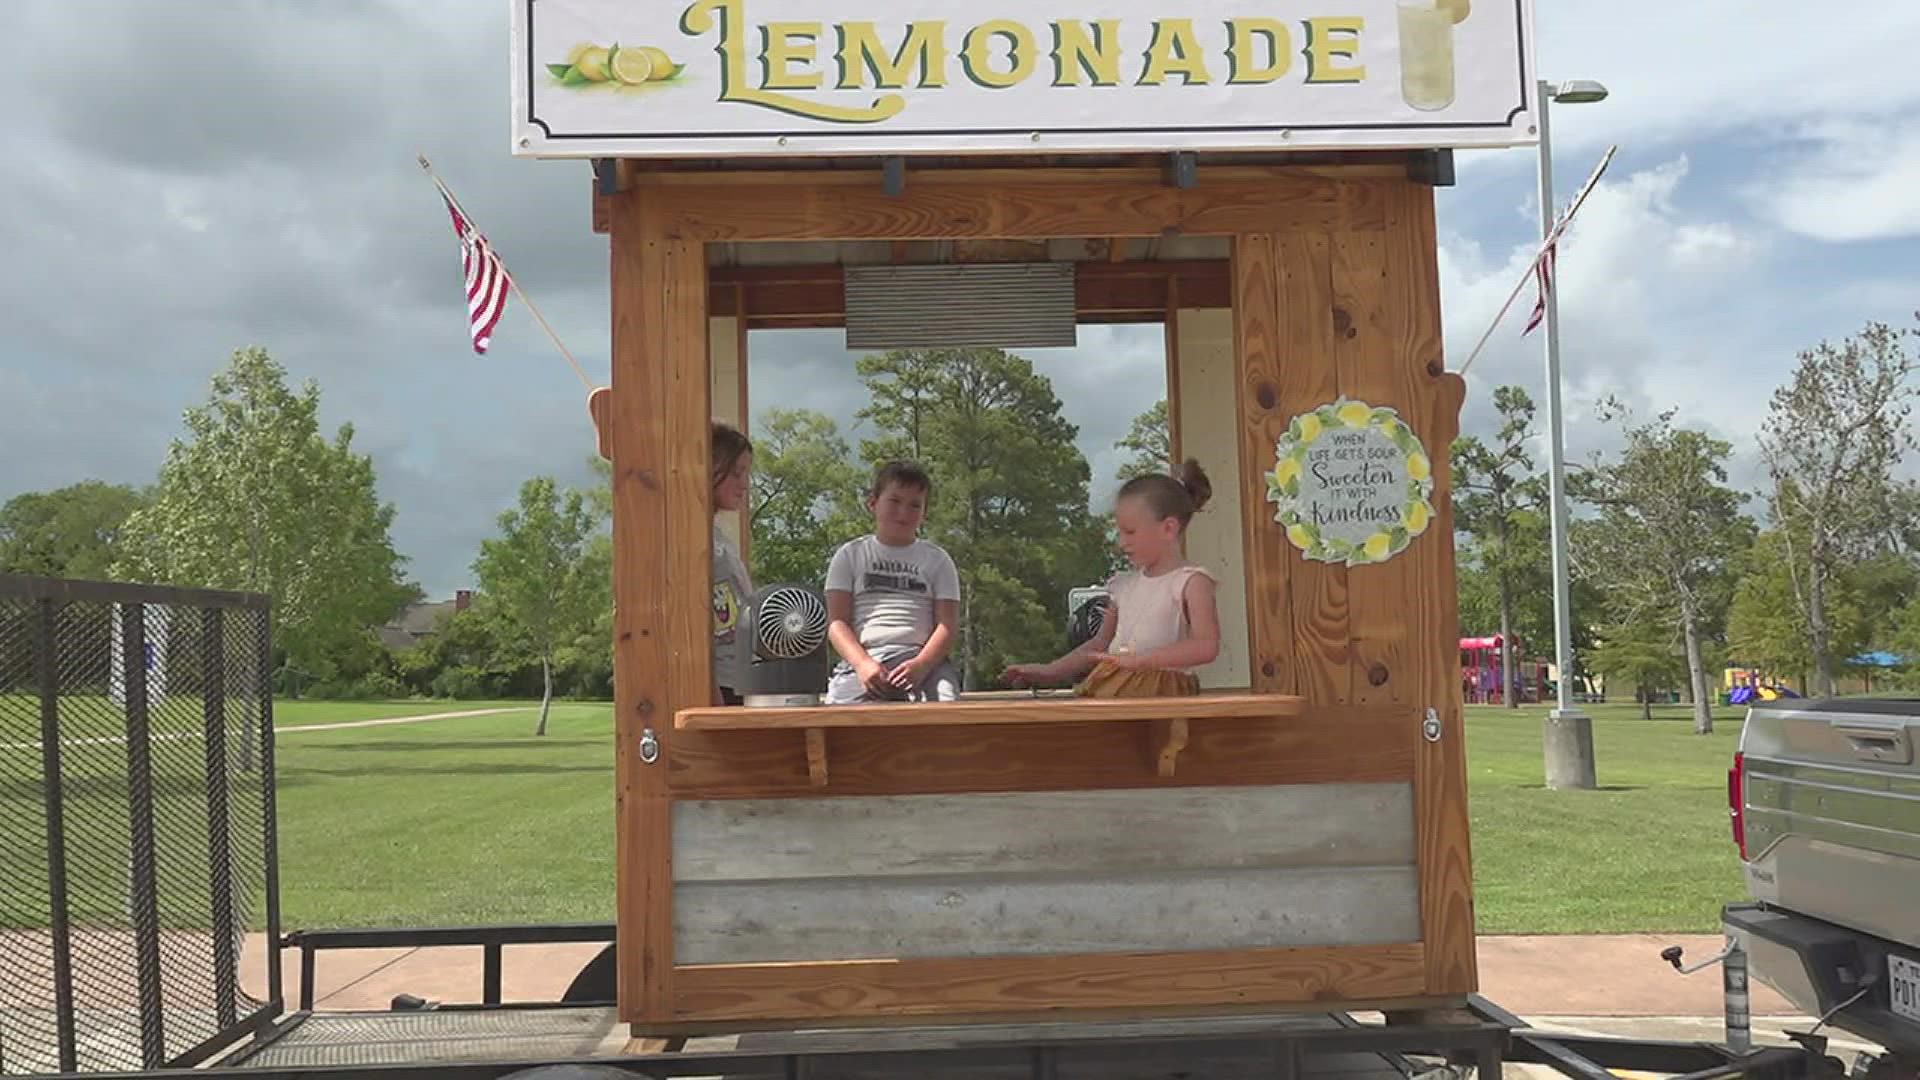 Aspen Manuel started her own lemonade stand to help raise money for Madison Jackson.